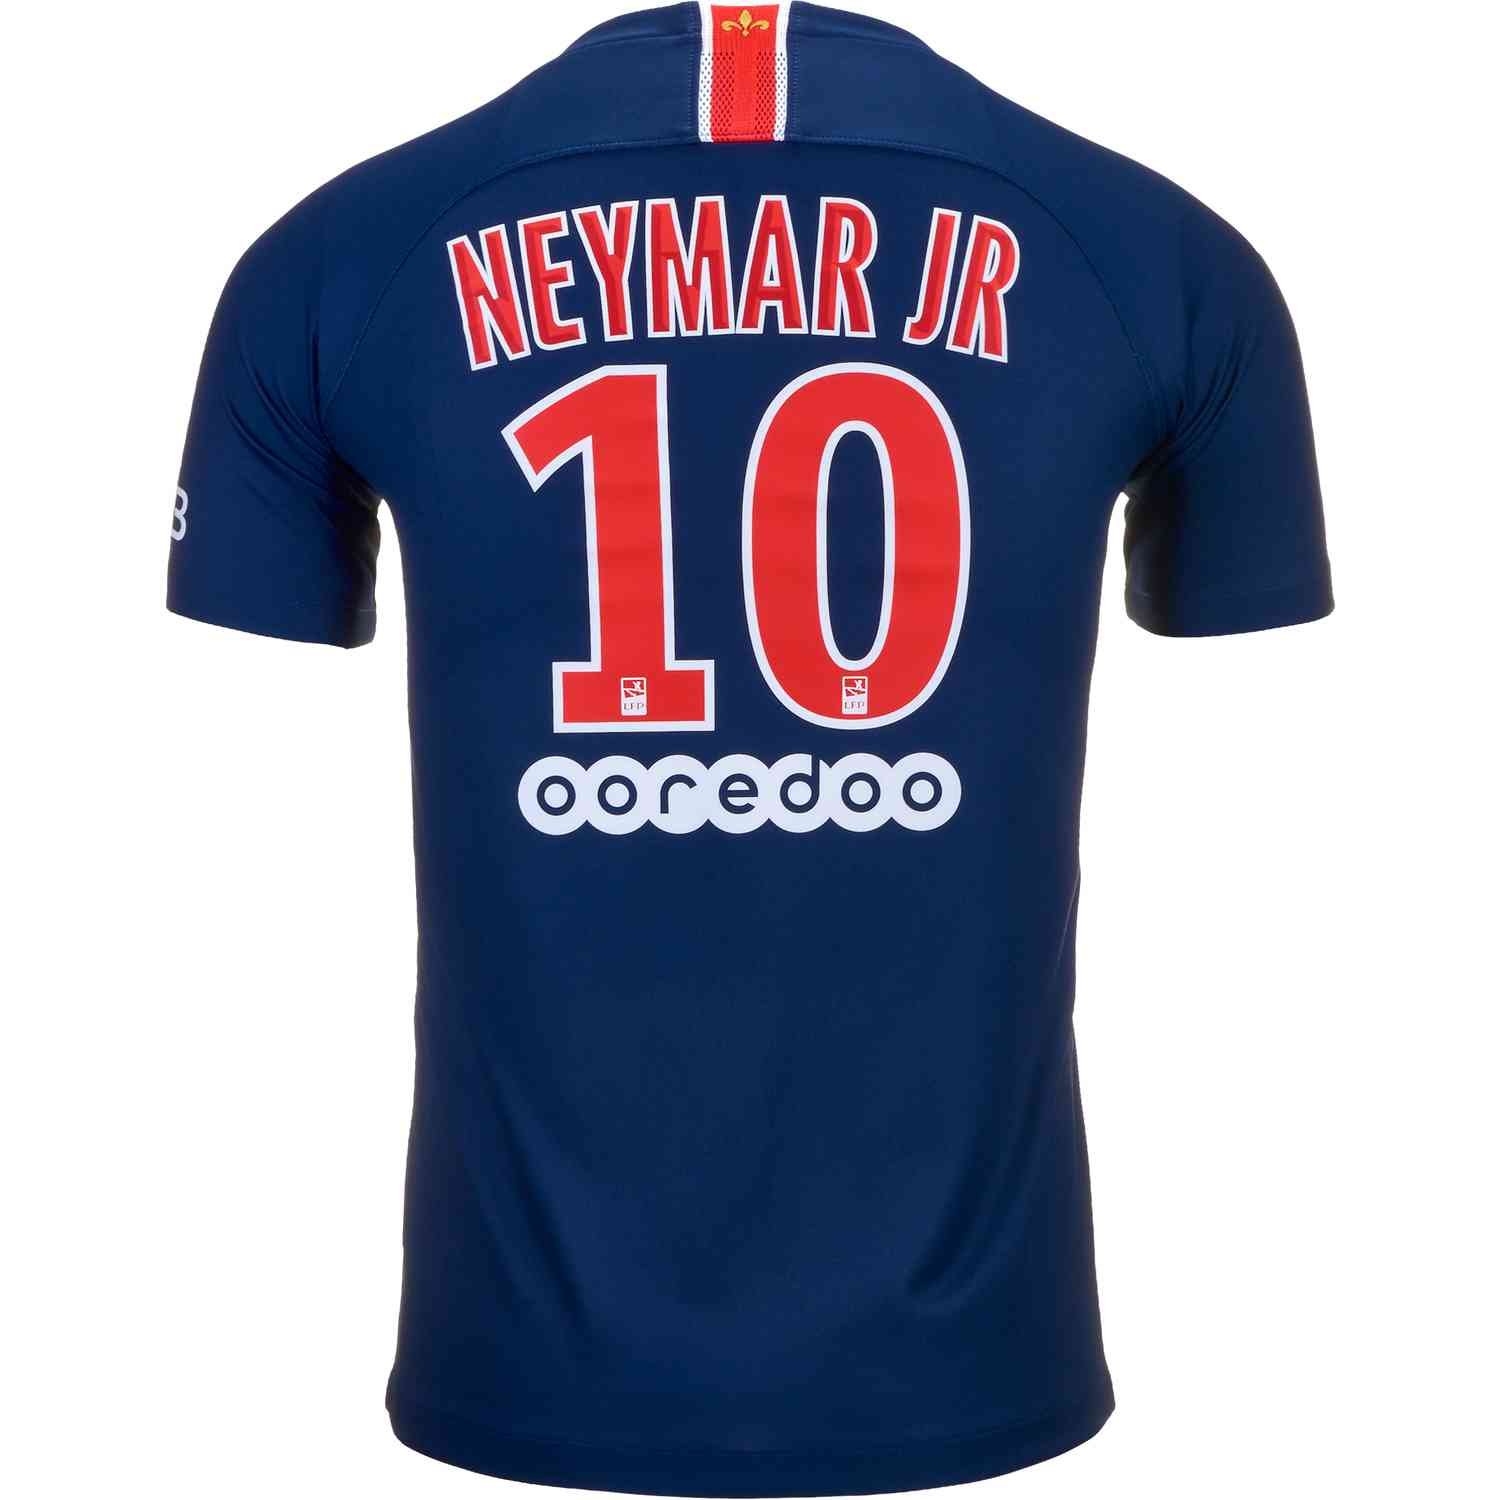 neymar jr jersey youth